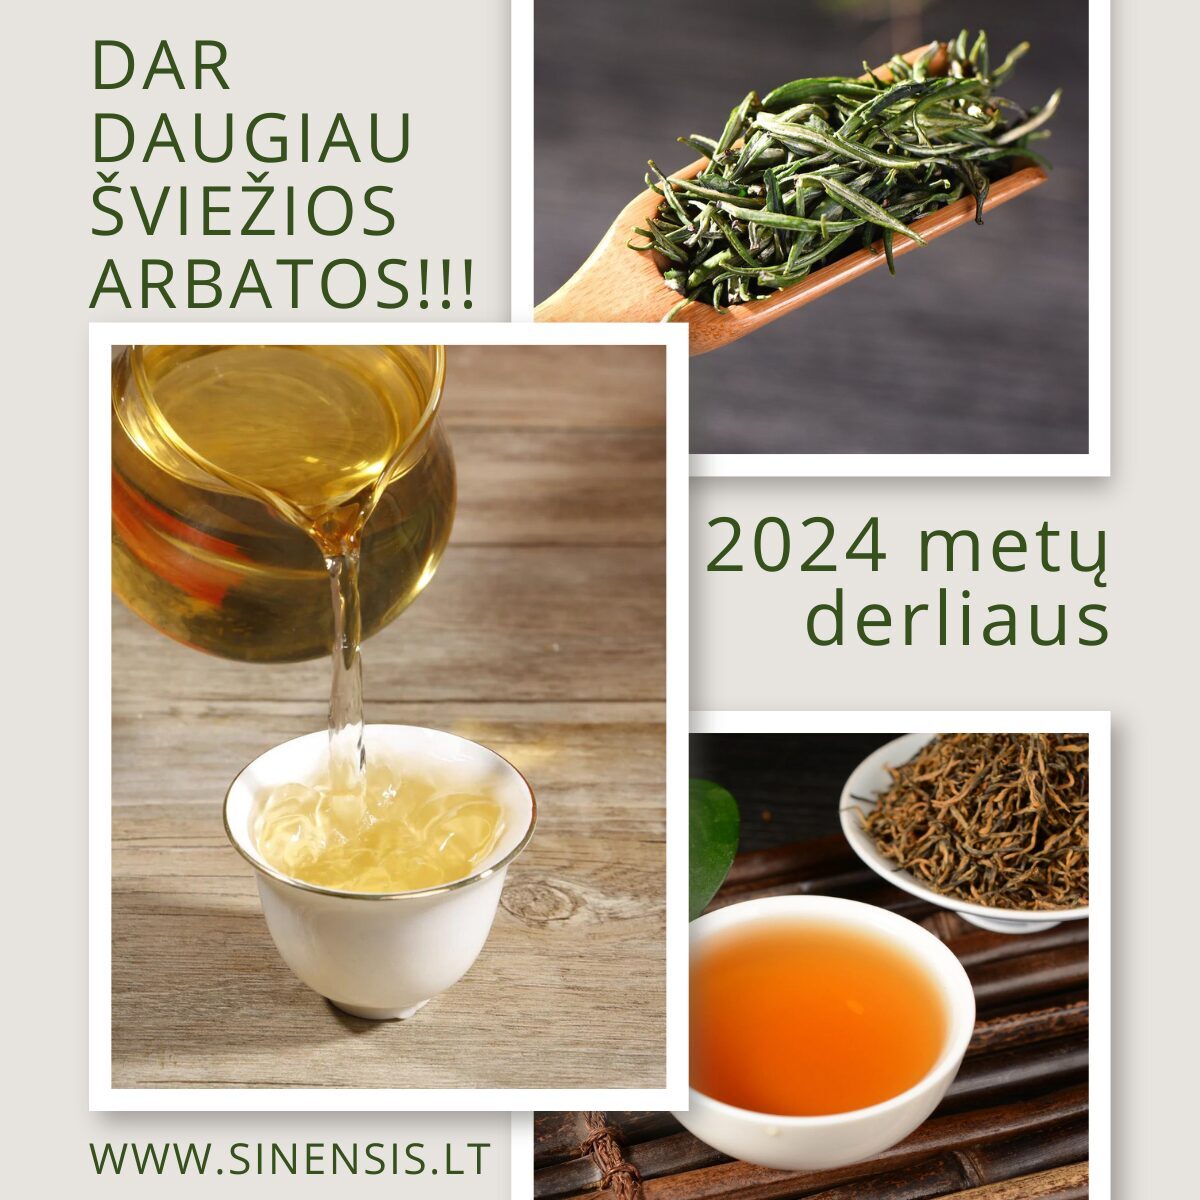 Šviežia šių metų arbata